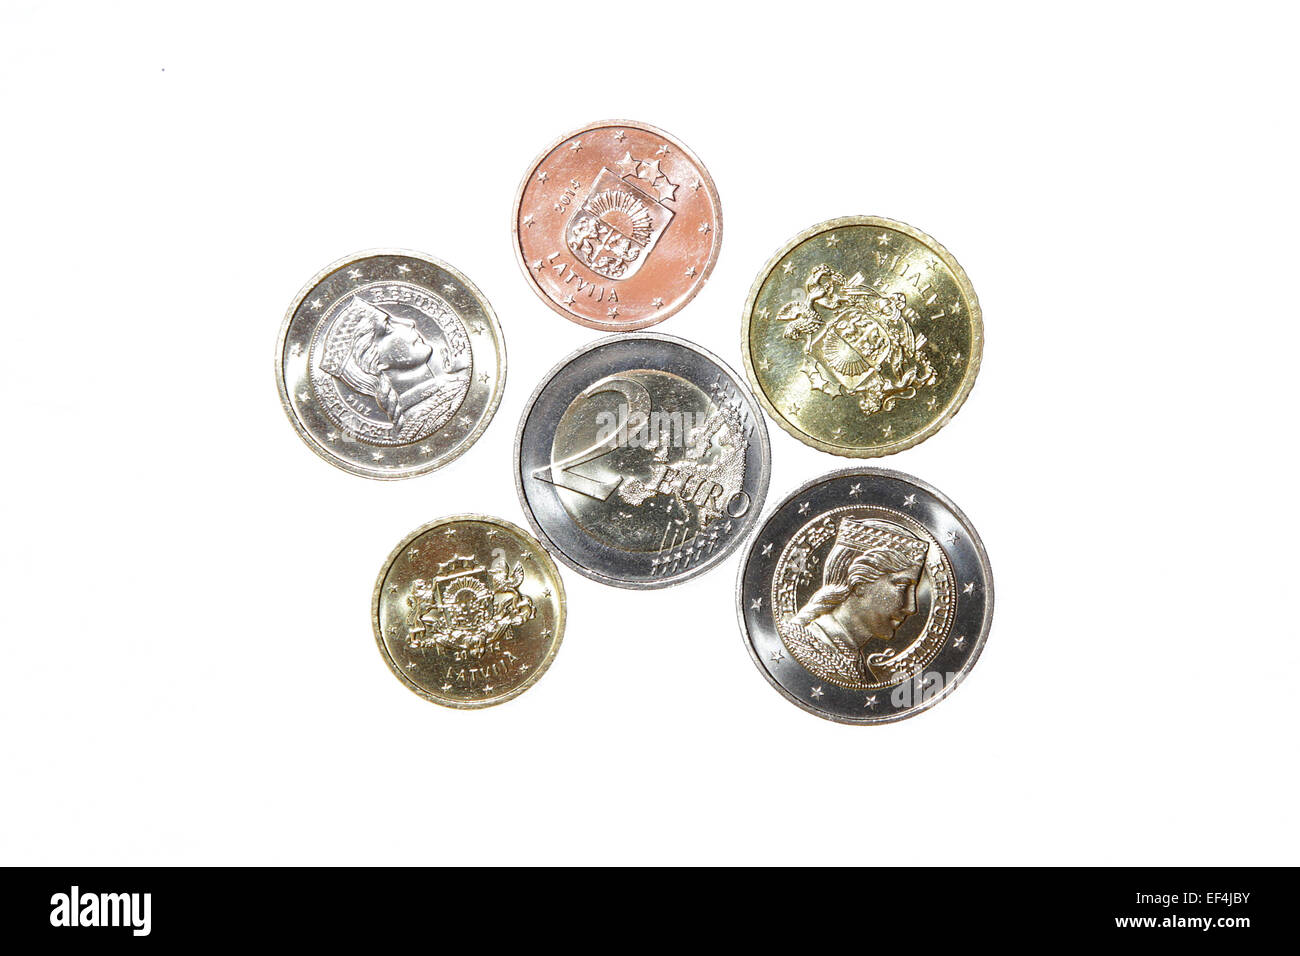 Nouveau deux milda Avers Revers République Lettonie euro coin collection  argent monnaie métallique isolée finances monétaire européenne Photo Stock  - Alamy